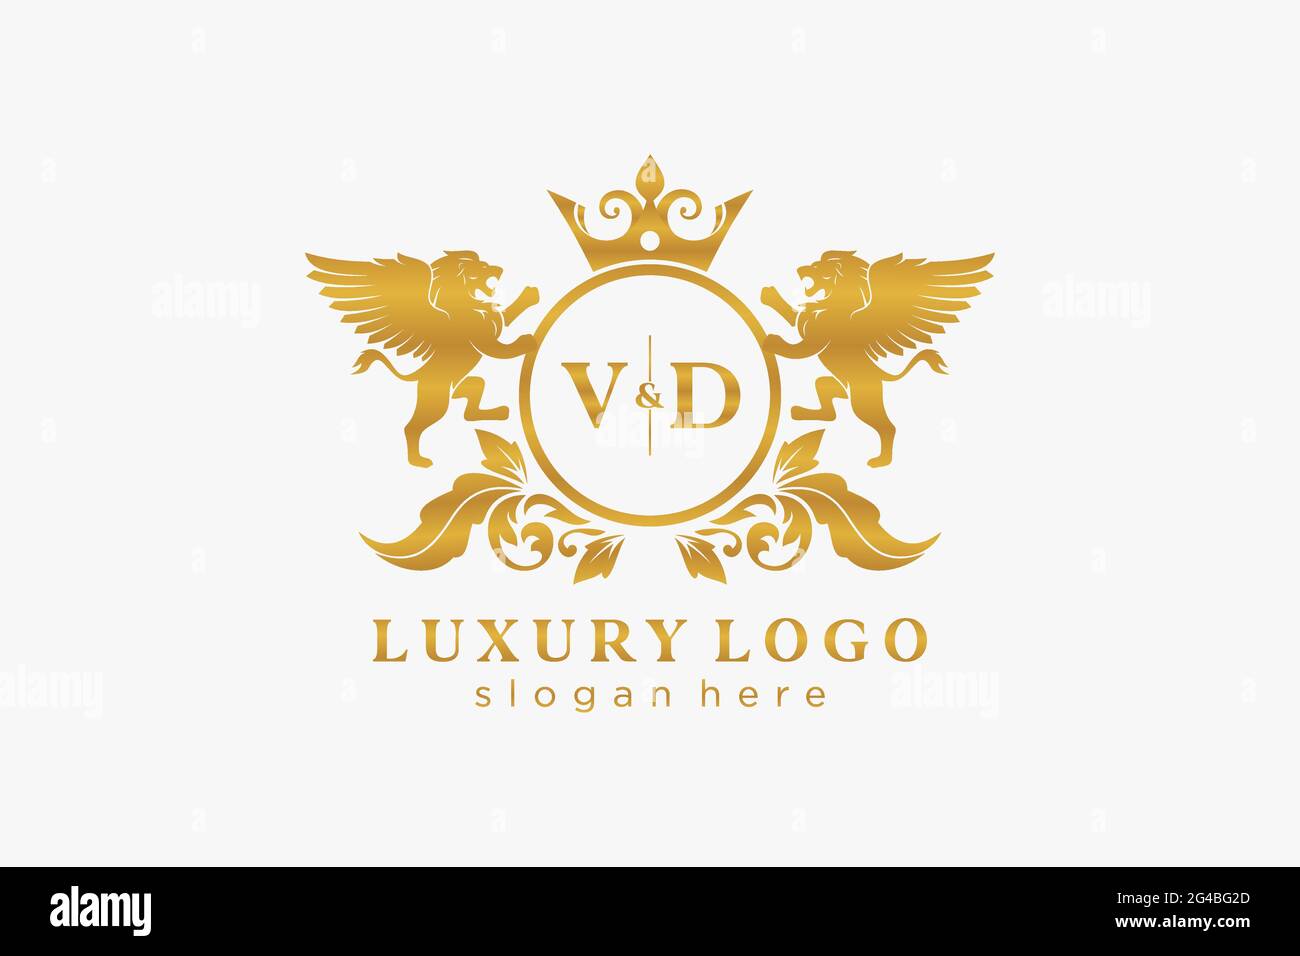 VD Letter Lion Royal Luxury Logo Vorlage in Vektorgrafik für Restaurant, Royalty, Boutique, Cafe, Hotel, Wappentisch, Schmuck, Mode und andere Vektor il Stock Vektor